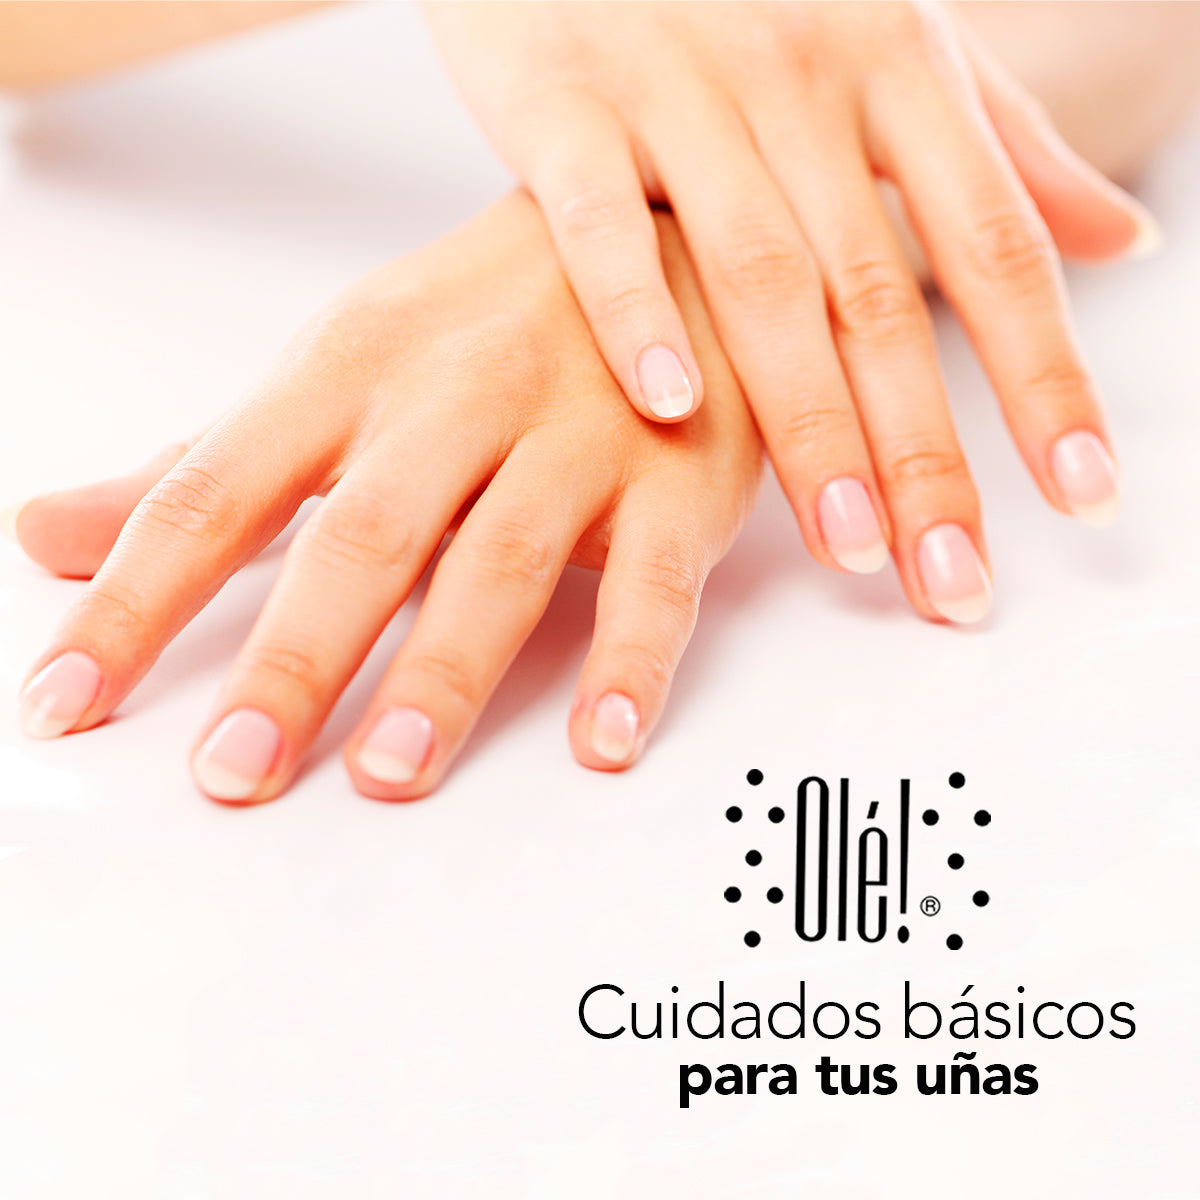 Cuidados básicos para tus uñas (Antes, durante y después de pintarlas)